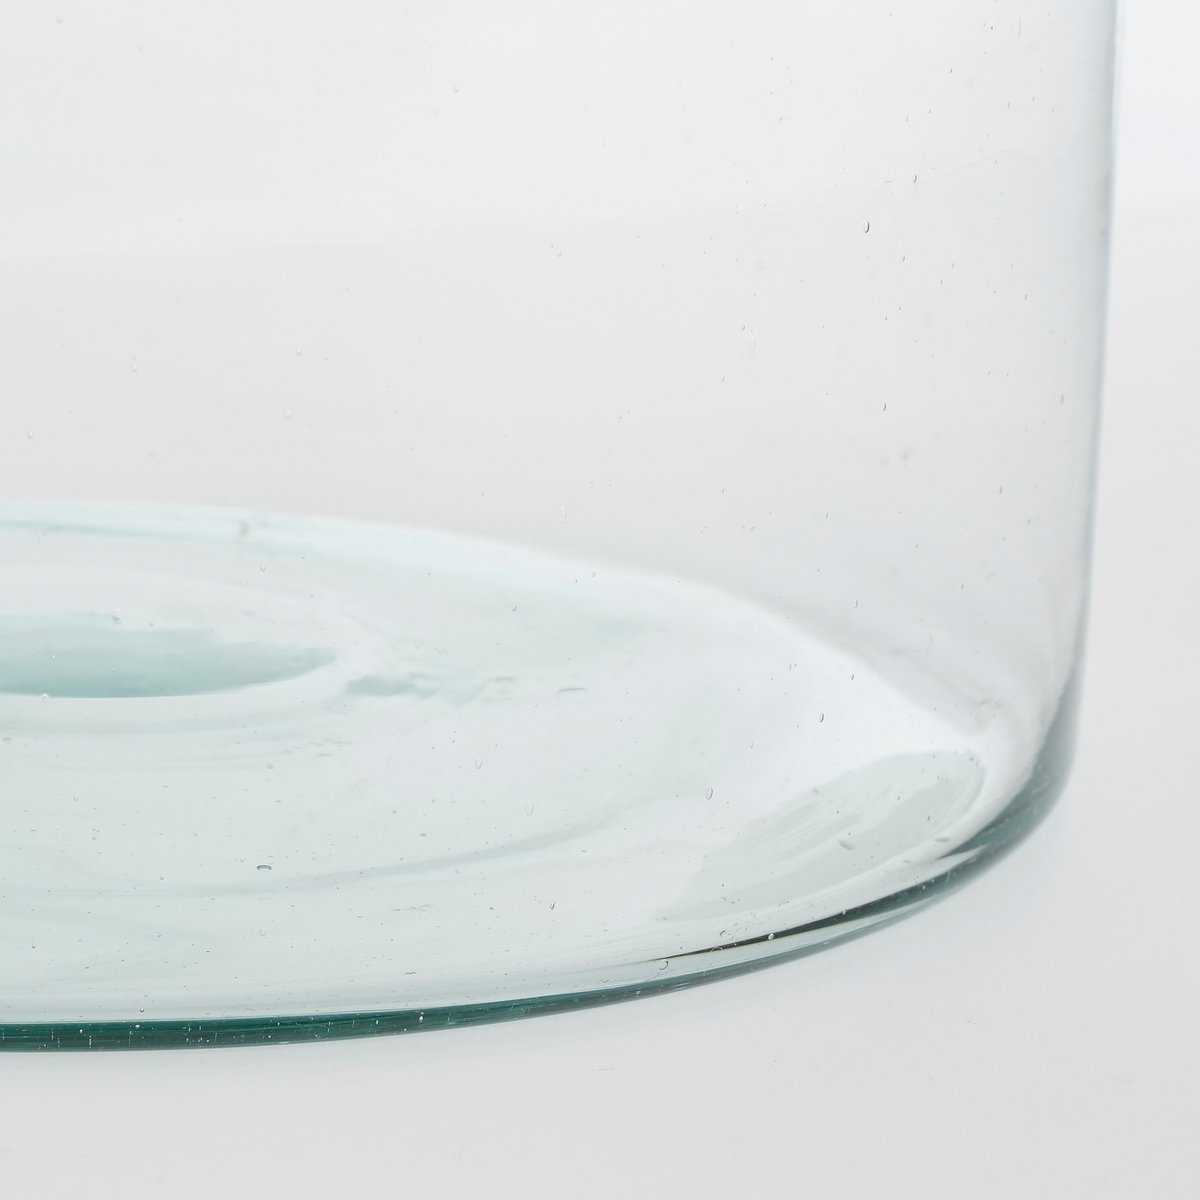 KantoormeubelenPlus Vienne Vaas - H20 x Ø21 cm - Gerecycled Glas - Transparant